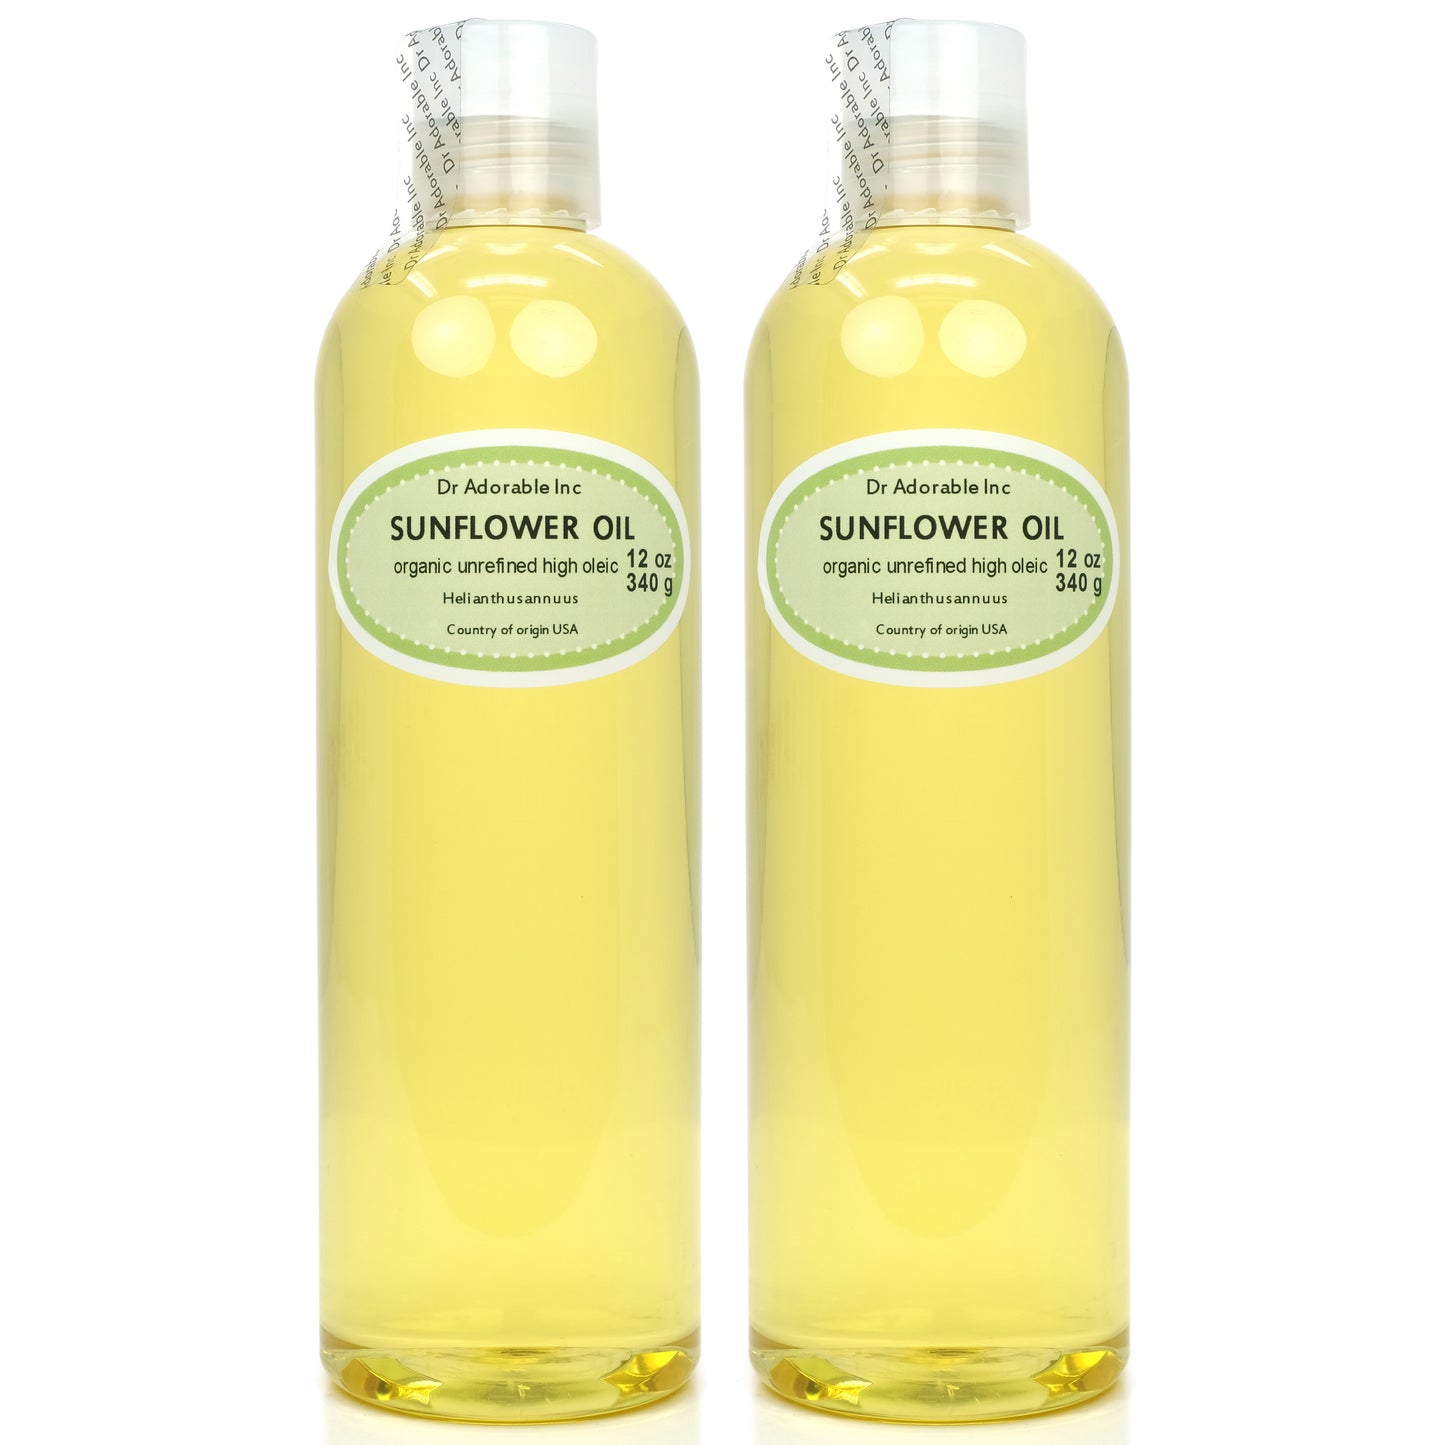 Sunflower Oil Unrefined - 100% Pure Natural Premium Organic Cold Pressed